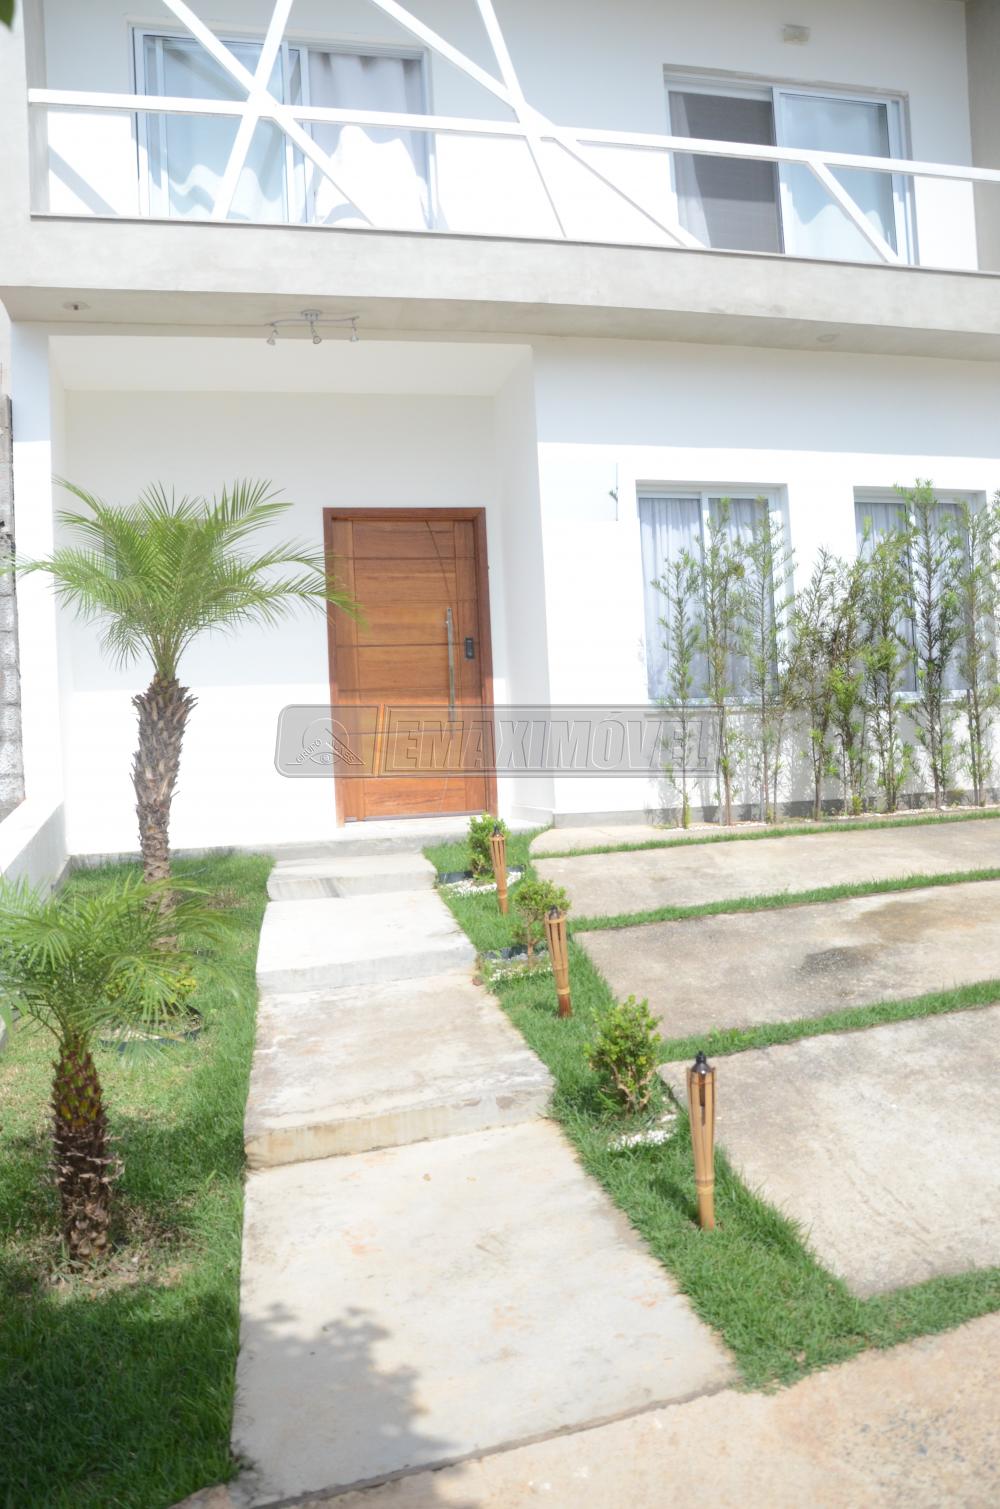 Comprar Casa / em Condomínios em Sorocaba R$ 580.000,00 - Foto 3